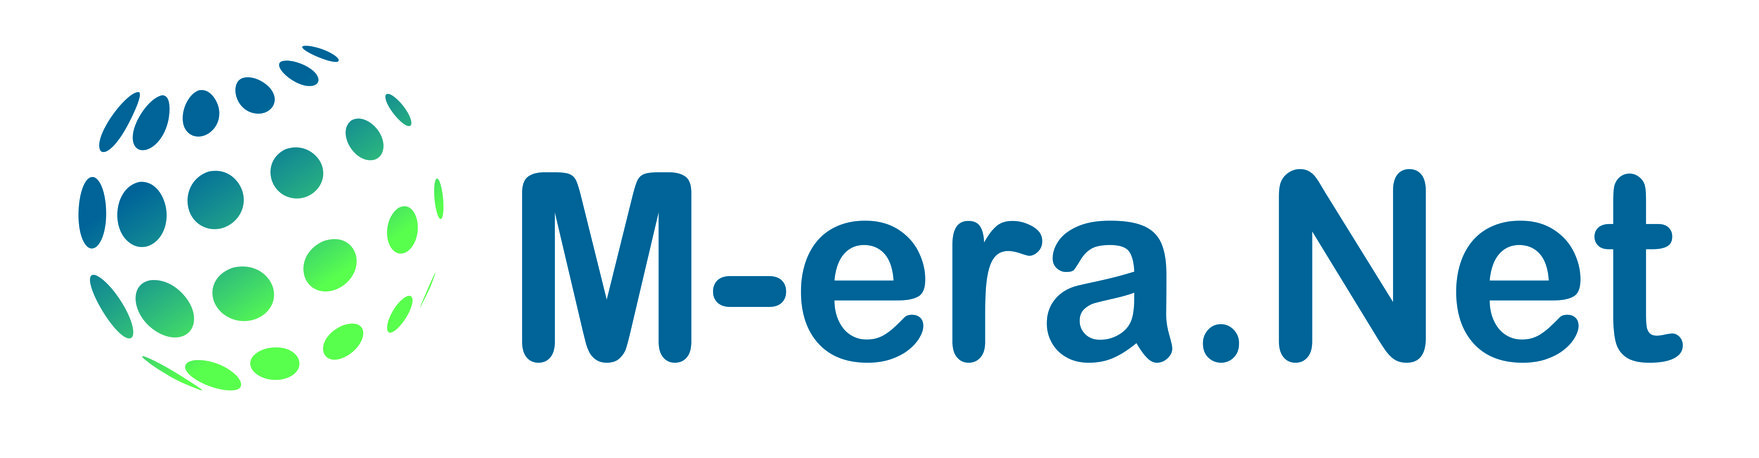 Logo der Partnerschaft: eine blau/grüne Kugel mit dem Schriftzug "M-era.net"